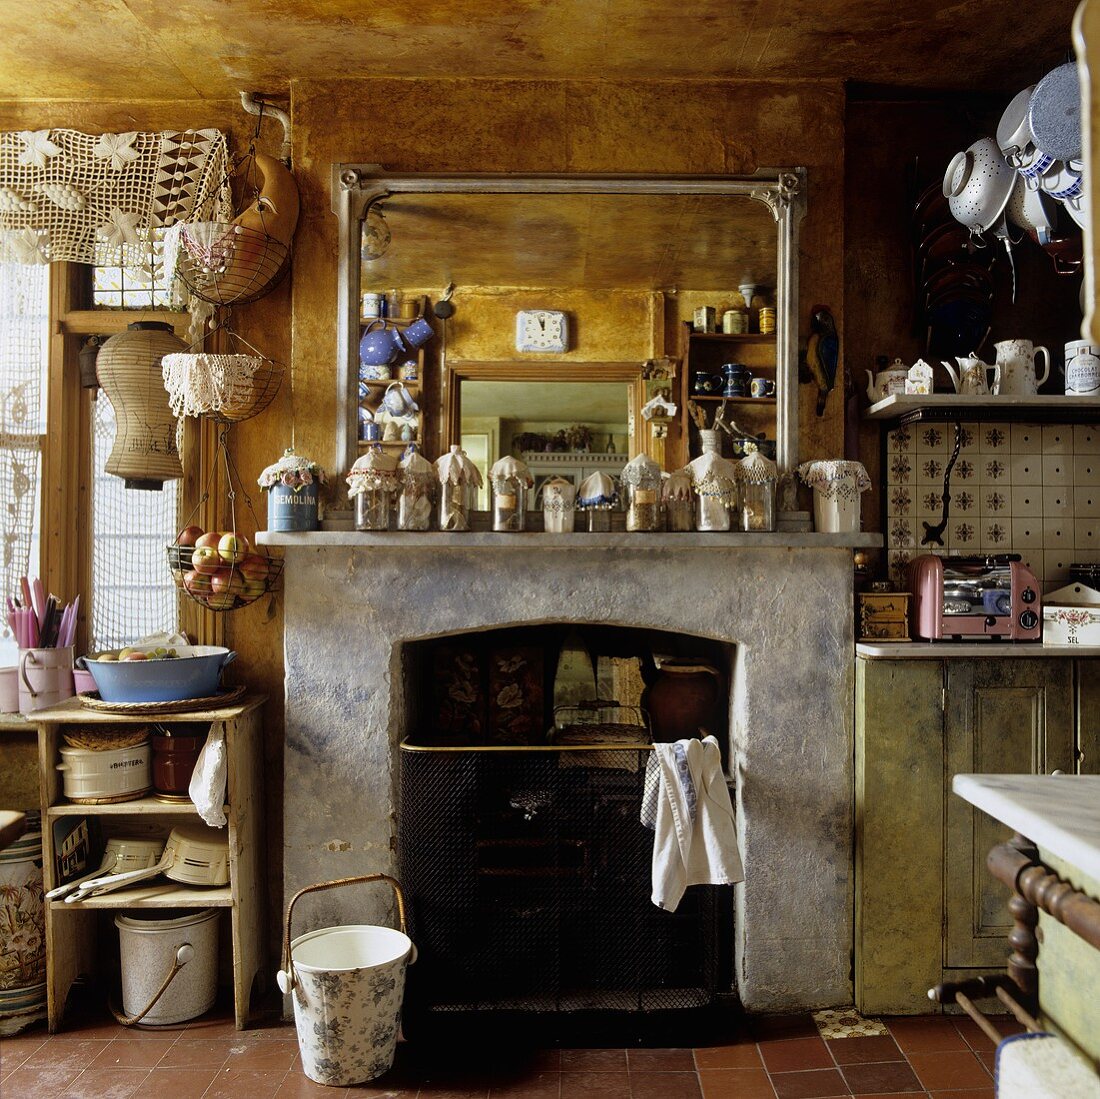 Landhausküche mit verrusstem Charme - Vorratsgläser vor Spiegel auf Kaminsims